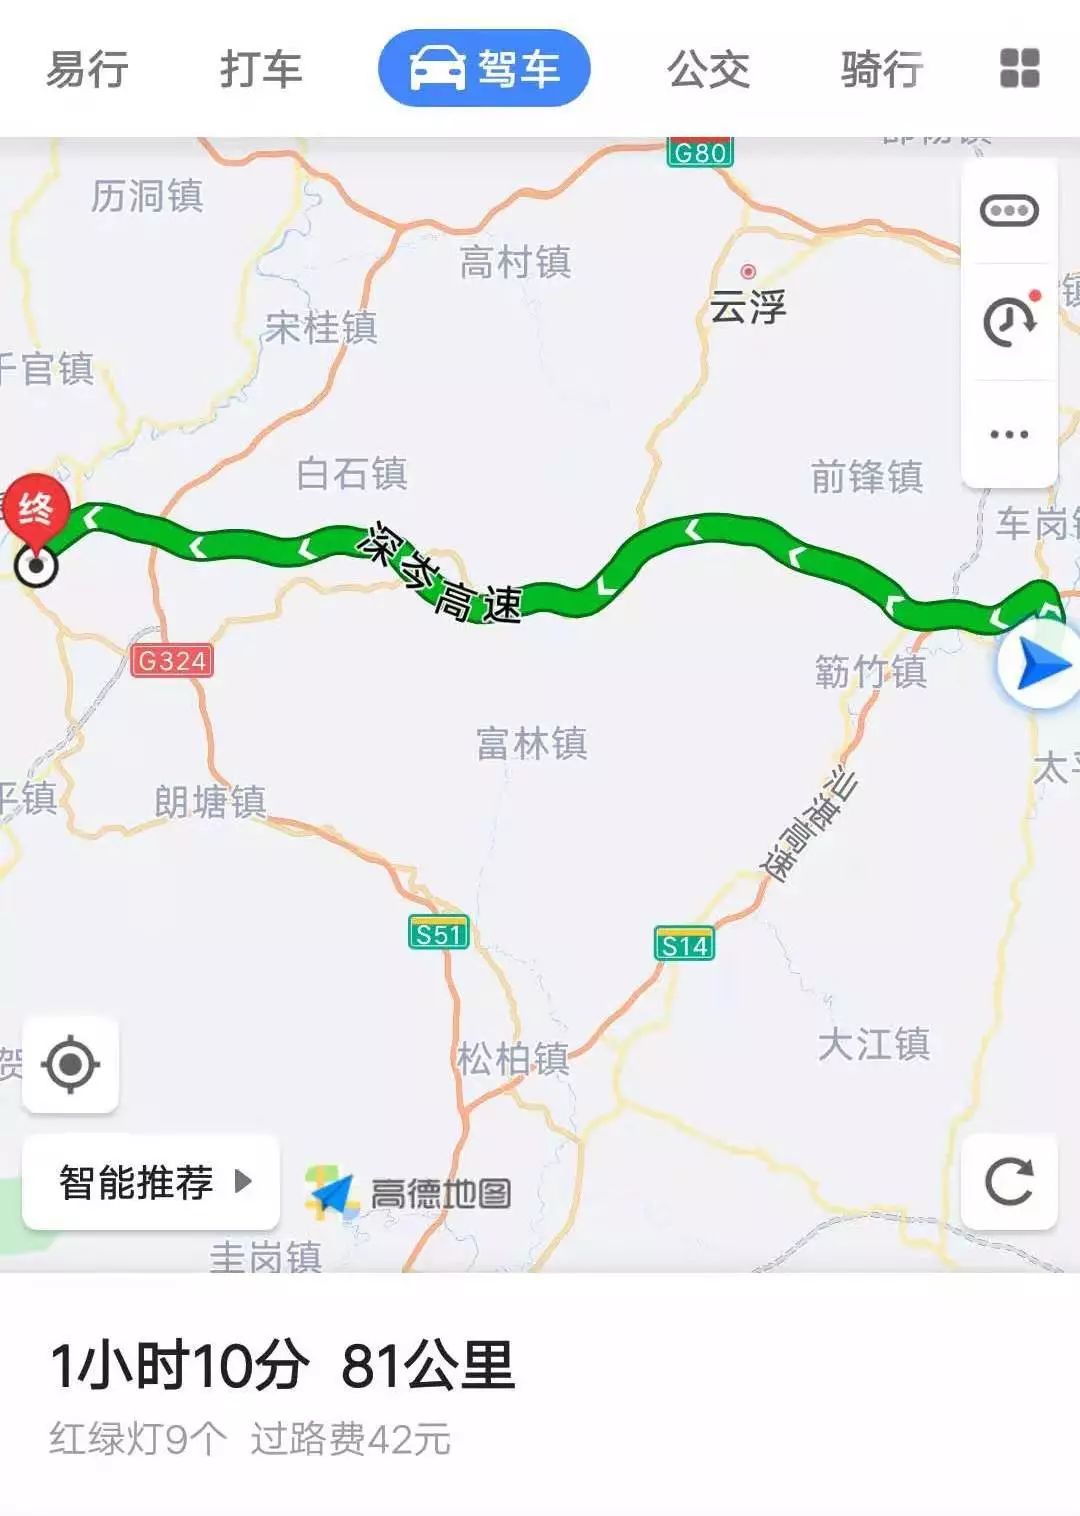 推介路线:新兴县城黄岗高速入口——深岑高速——罗定下高速——352